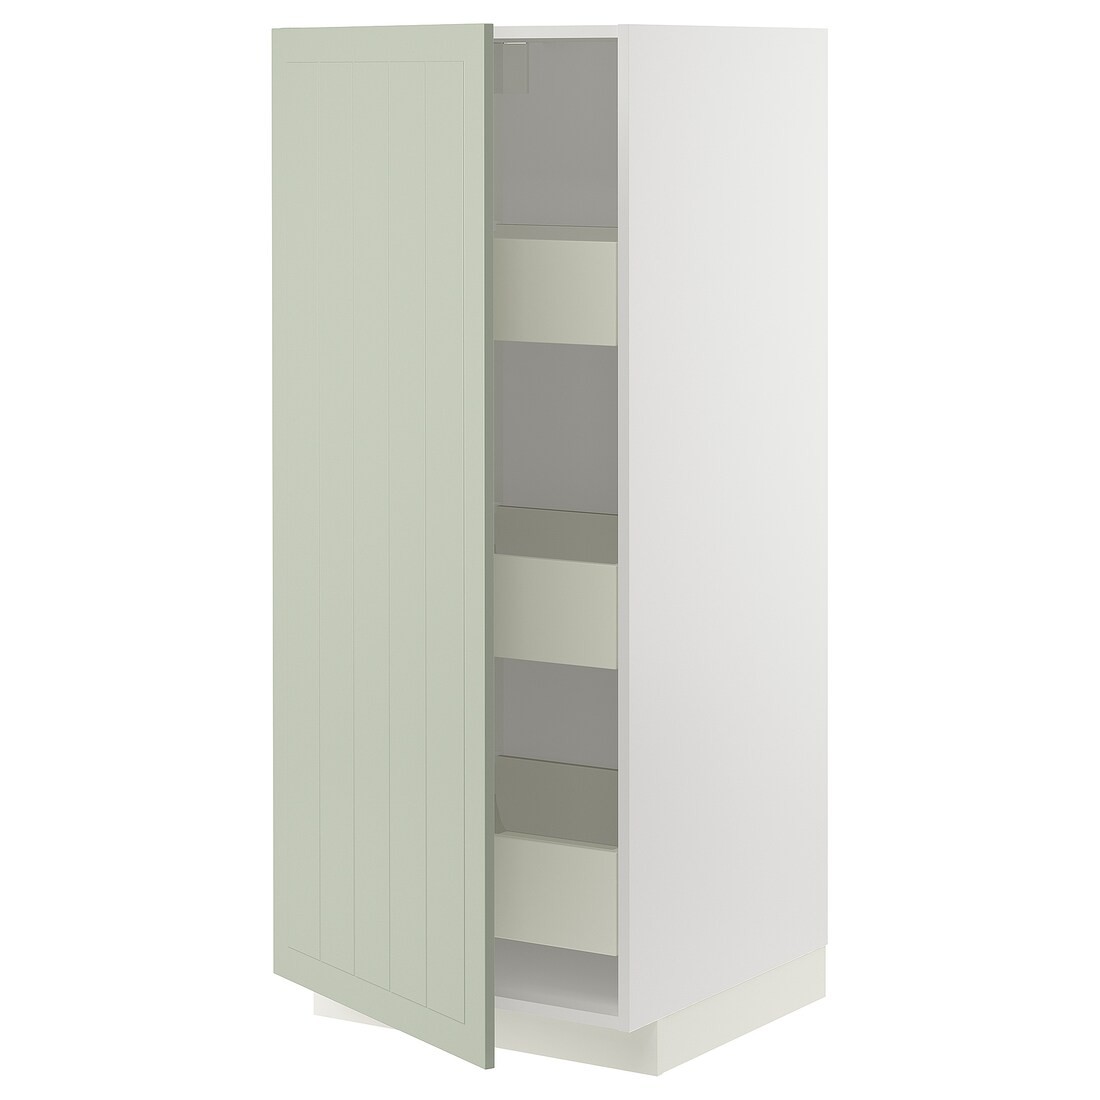 IKEA METOD МЕТОД / MAXIMERA МАКСИМЕРА Шкаф высокий с ящиками, белый / Stensund светло-зеленый, 60x60x140 см 29486609 | 294.866.09